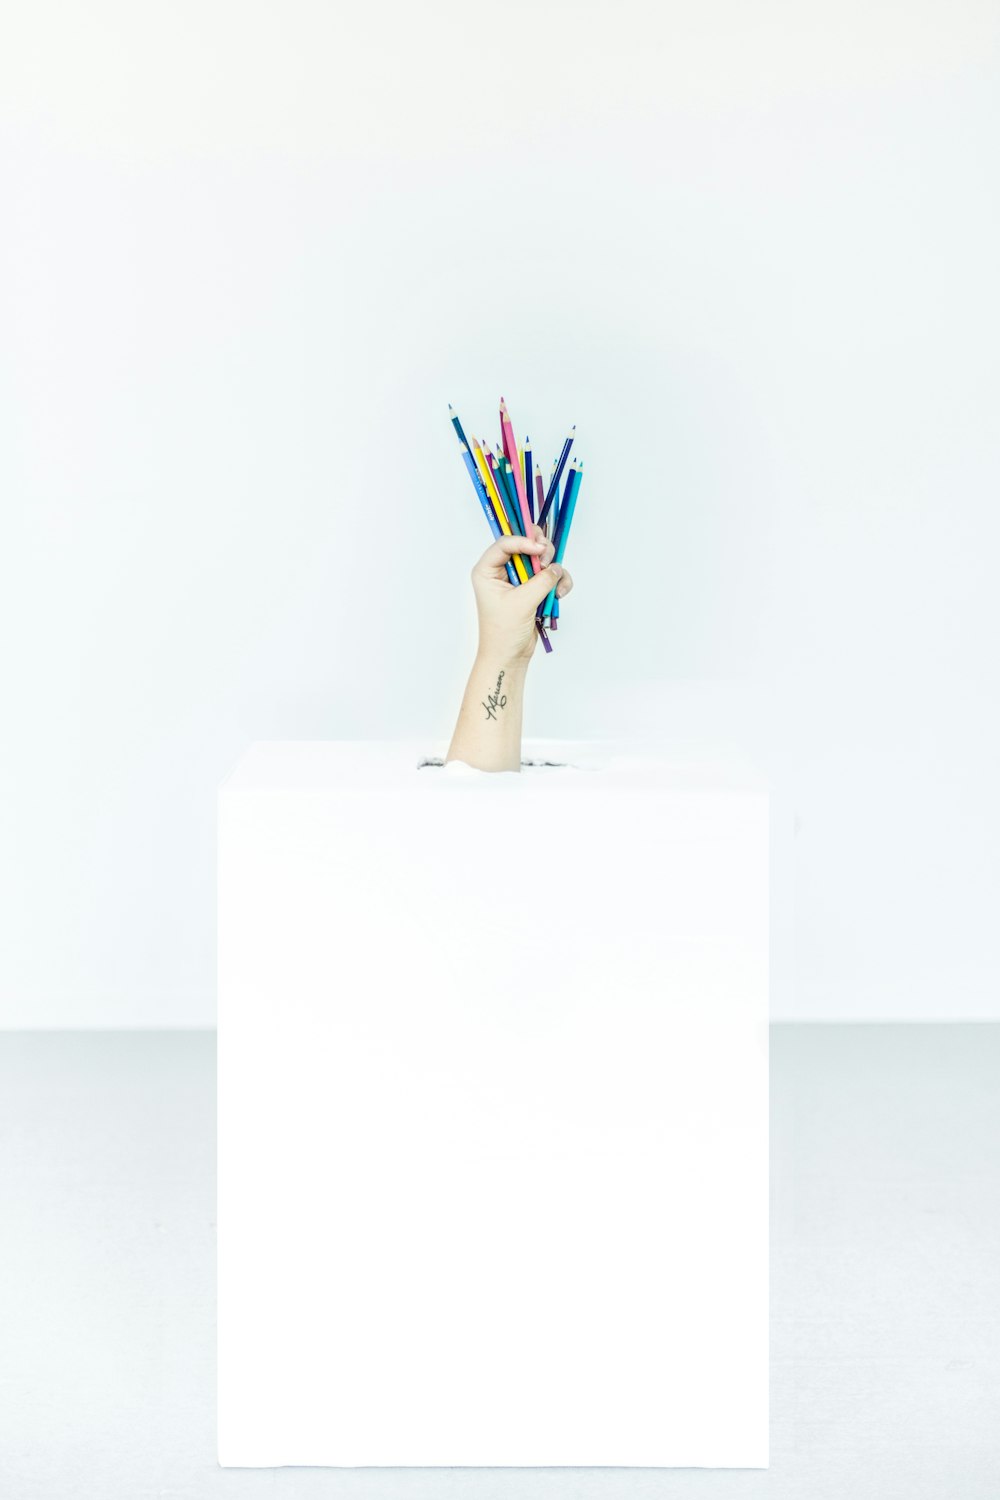 La main d’une personne est sortie de la boîte en tenant des stylos de couleurs assorties